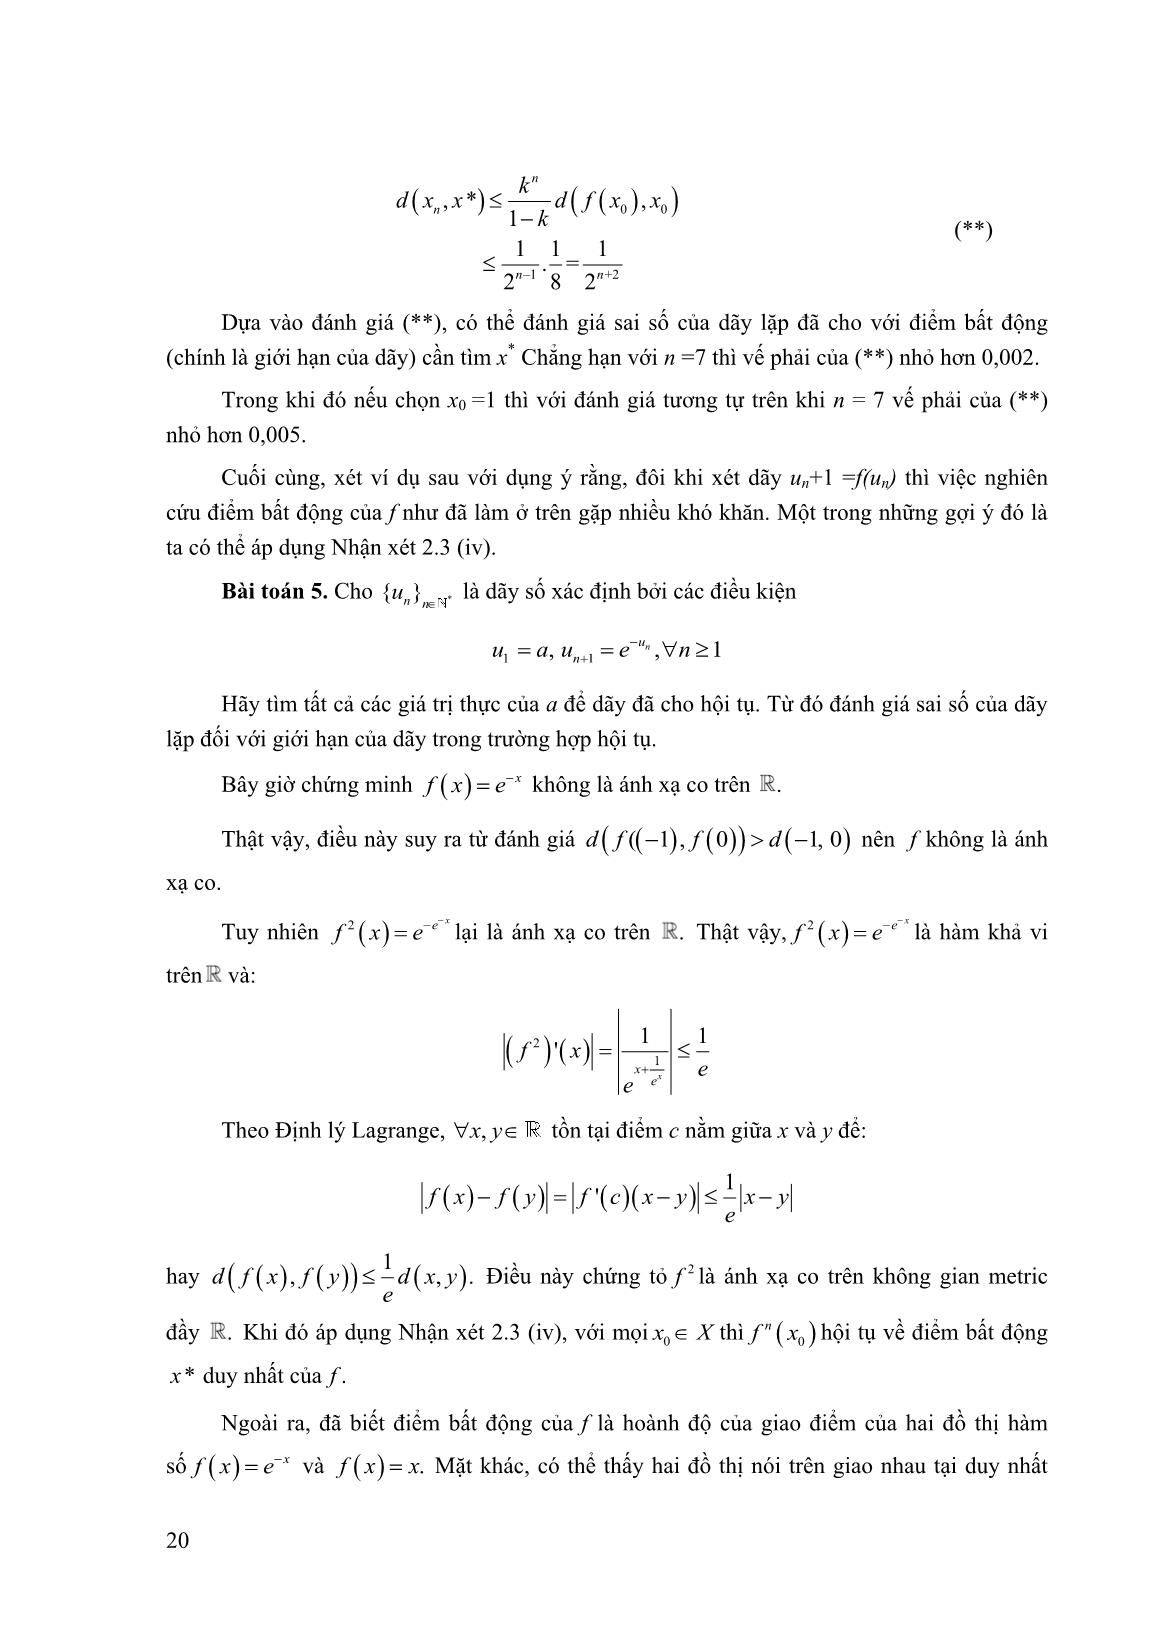 Một số ứng dụng của nguyên lý ánh xạ co trong không gian Metric trang 7